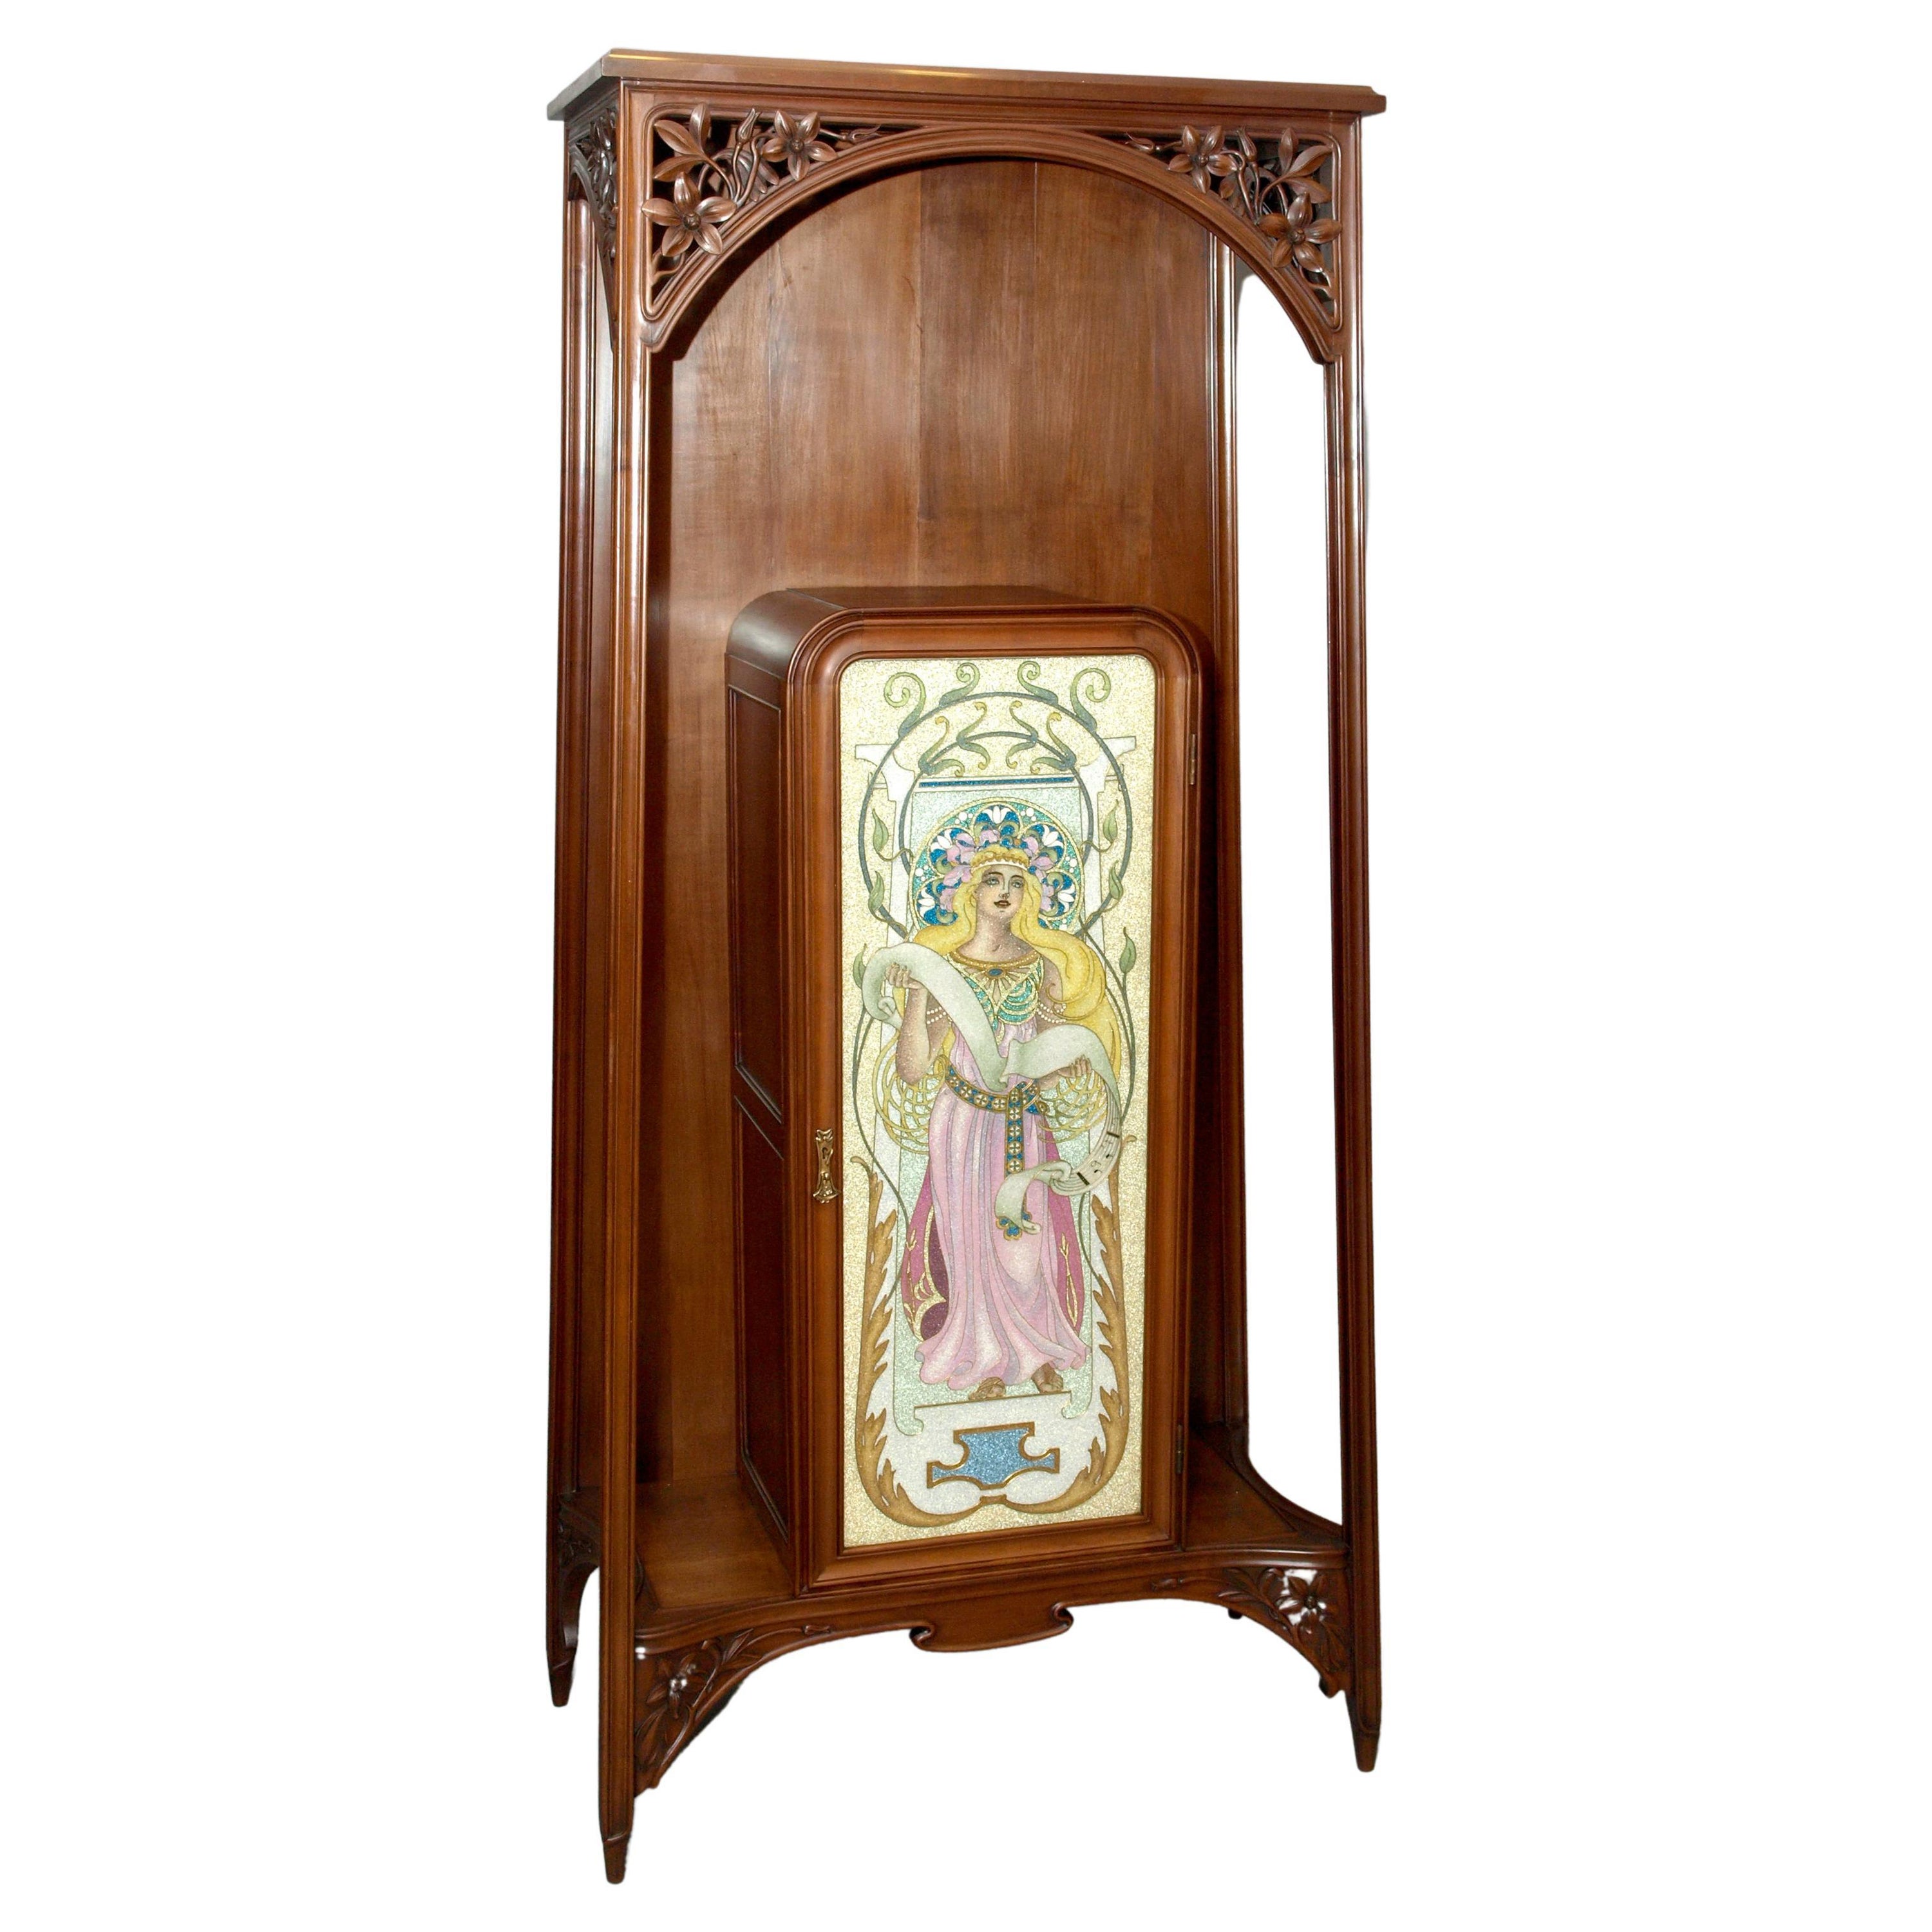 Cloisonne Art Nouveau Cabinet, Louis Majorelle Attributed